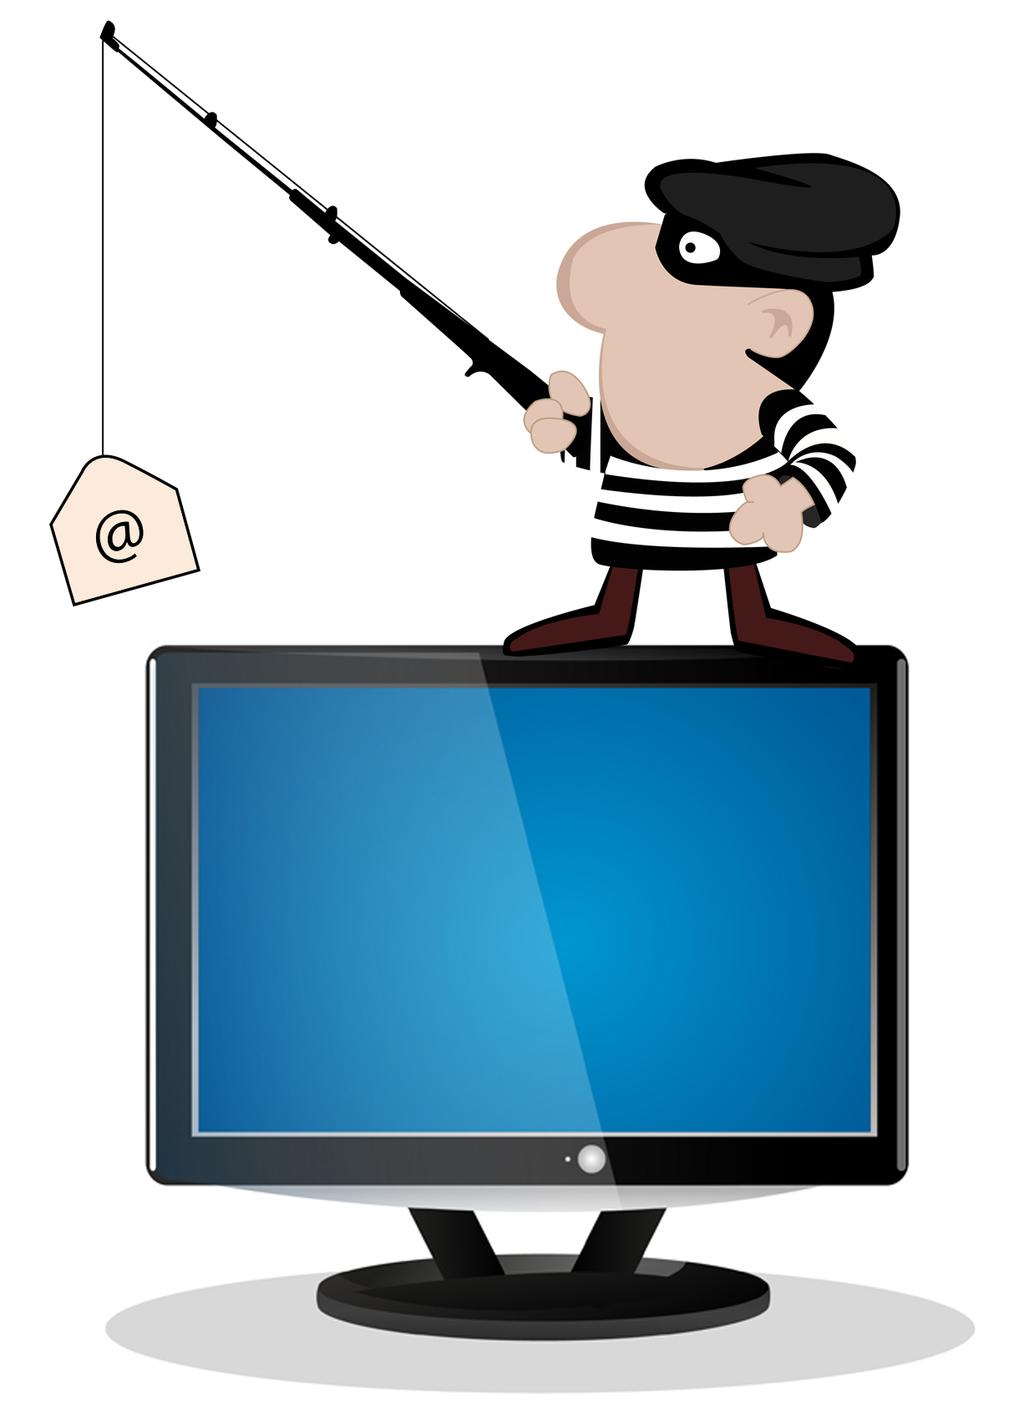 Introdução Phishing é uma das atividades criminosas mais lucrativas na Internet Phishing combina engenharia social e técnicas de